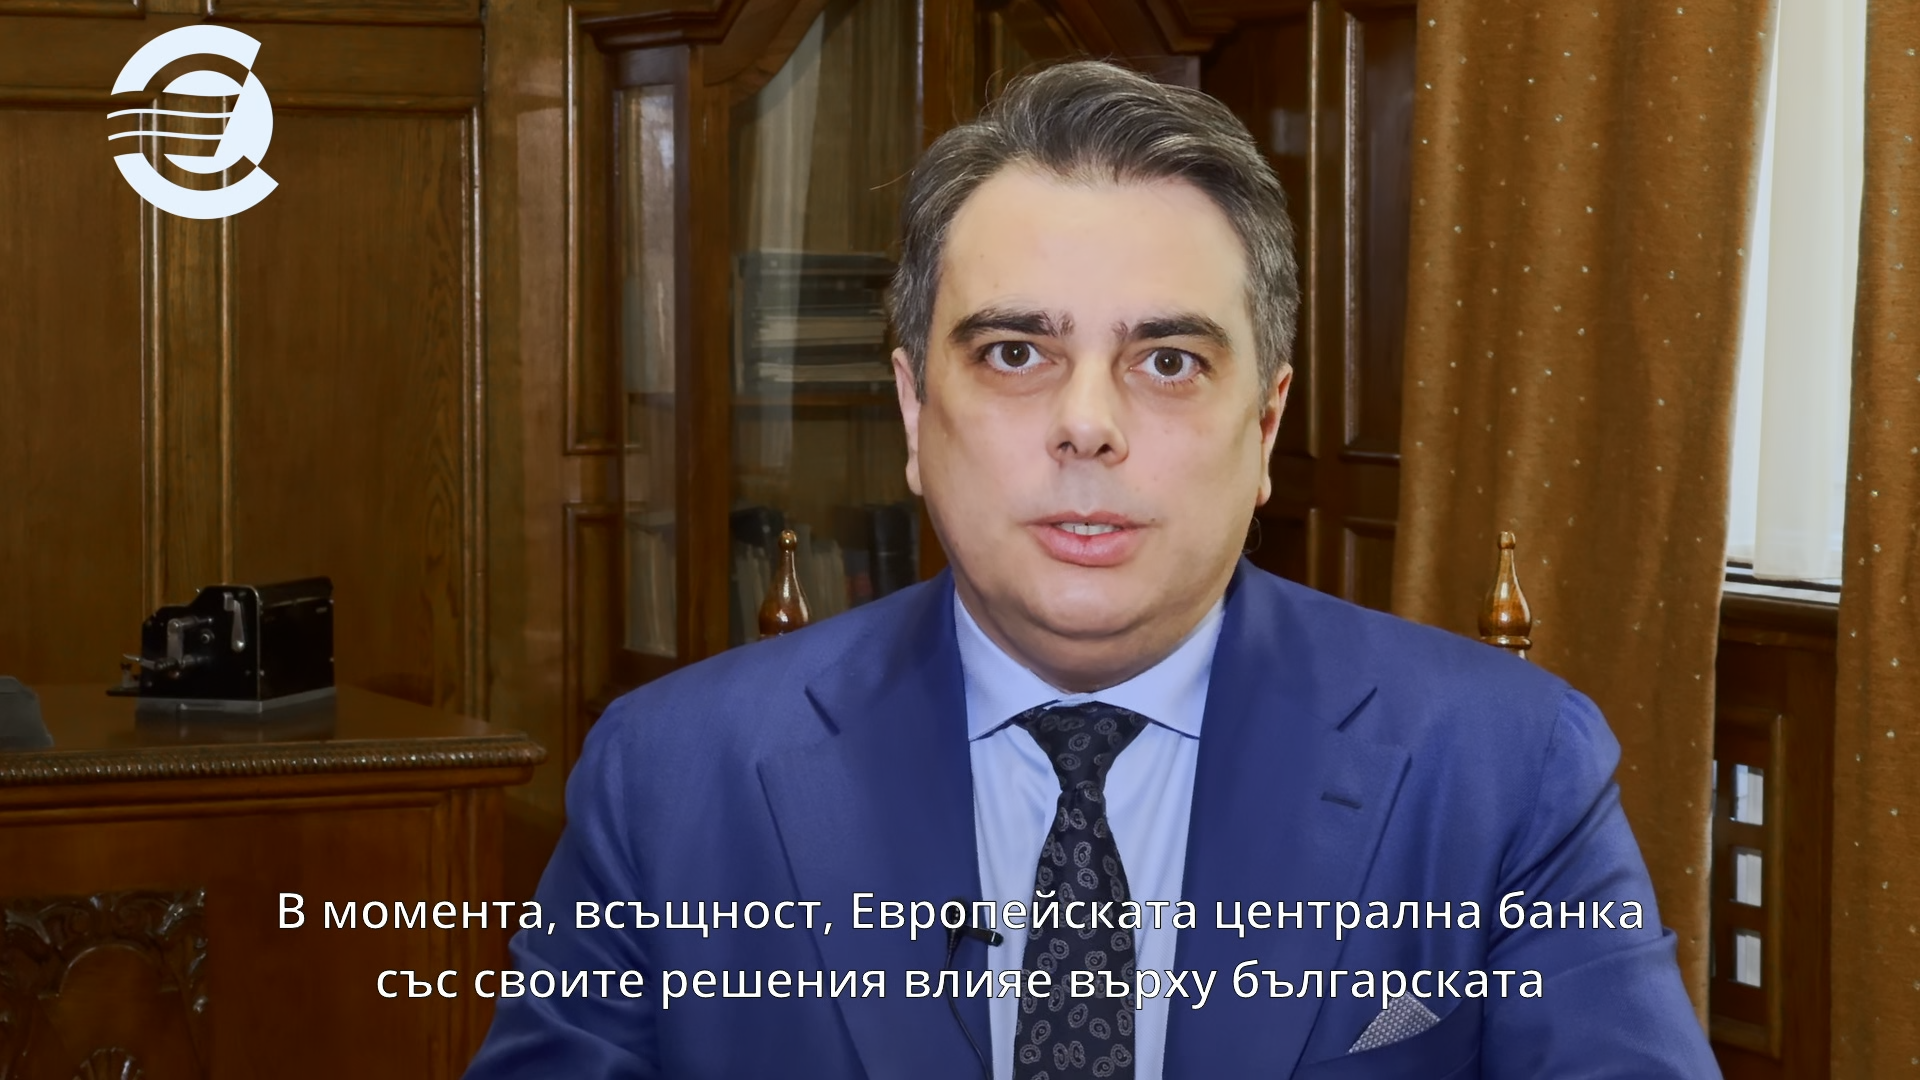 Асен Василев, министър на финансите: Това е изключително важна стъпка за България, защото заедно с другите европейски държави ще можем да определяме монетарната политика на Европа